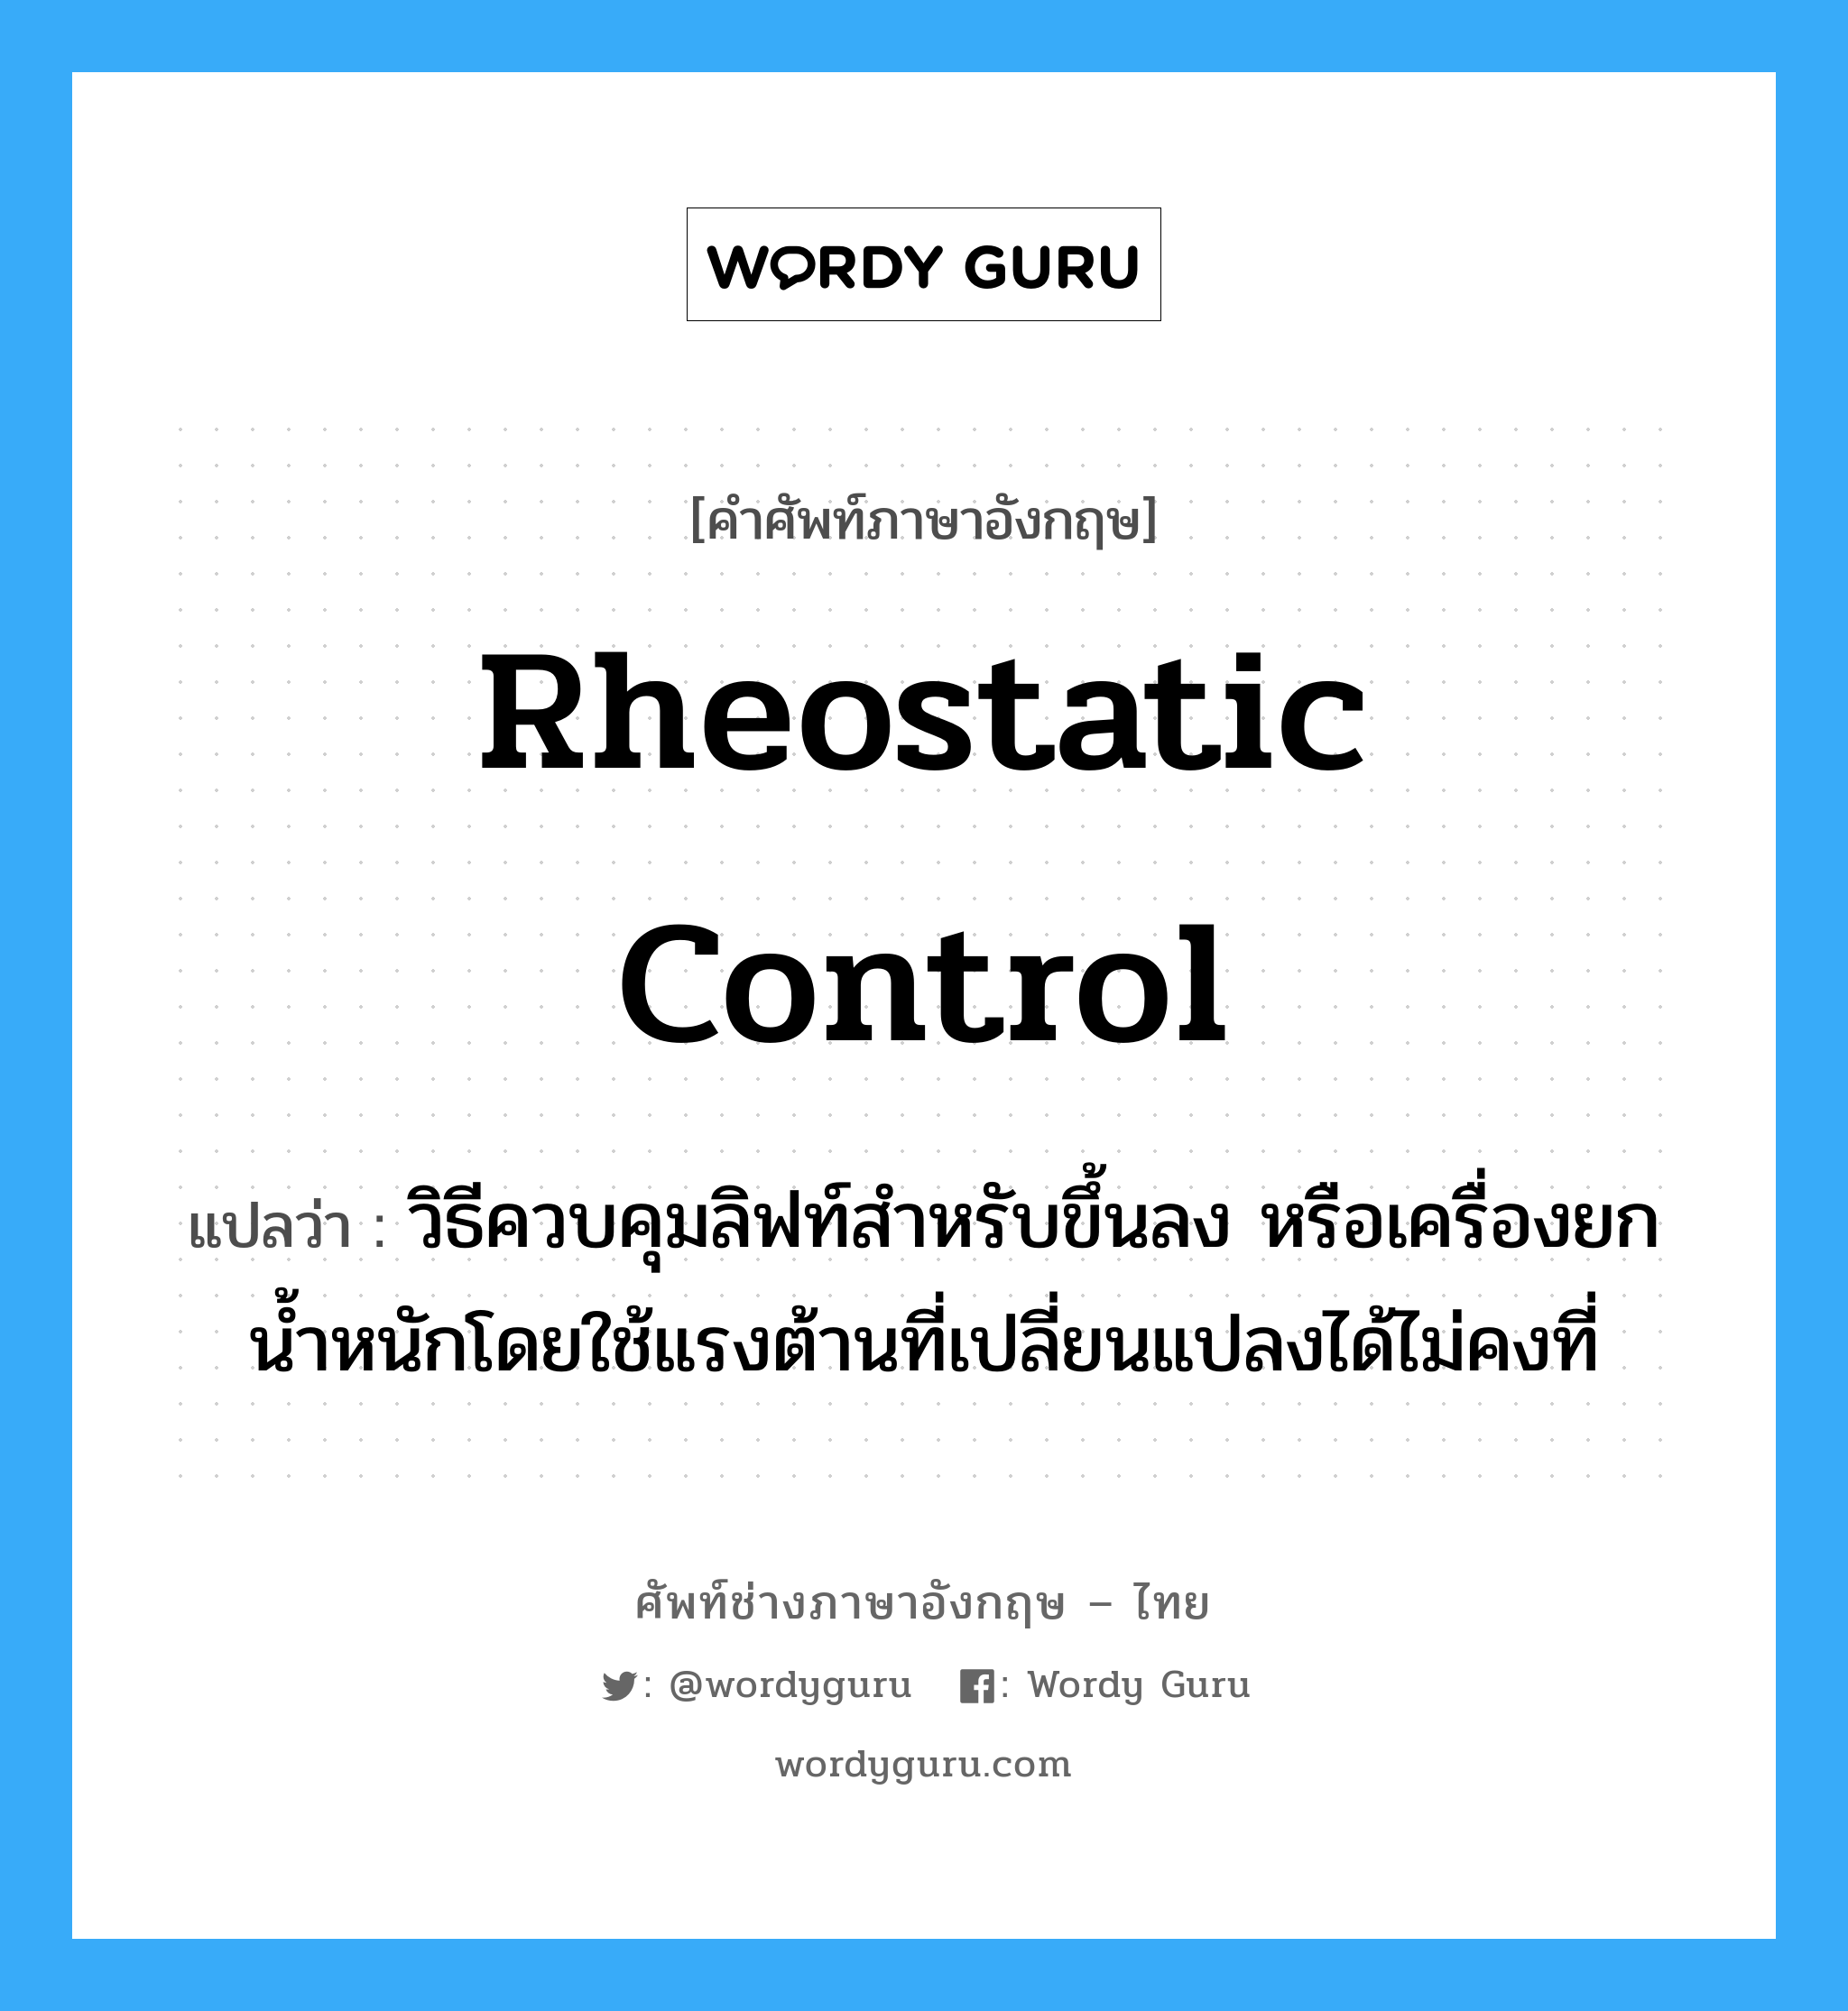 rheostatic control แปลว่า?, คำศัพท์ช่างภาษาอังกฤษ - ไทย rheostatic control คำศัพท์ภาษาอังกฤษ rheostatic control แปลว่า วิธีควบคุมลิฟท์สำหรับขึ้นลง หรือเครื่องยกน้ำหนักโดยใช้แรงต้านที่เปลี่ยนแปลงได้ไม่คงที่